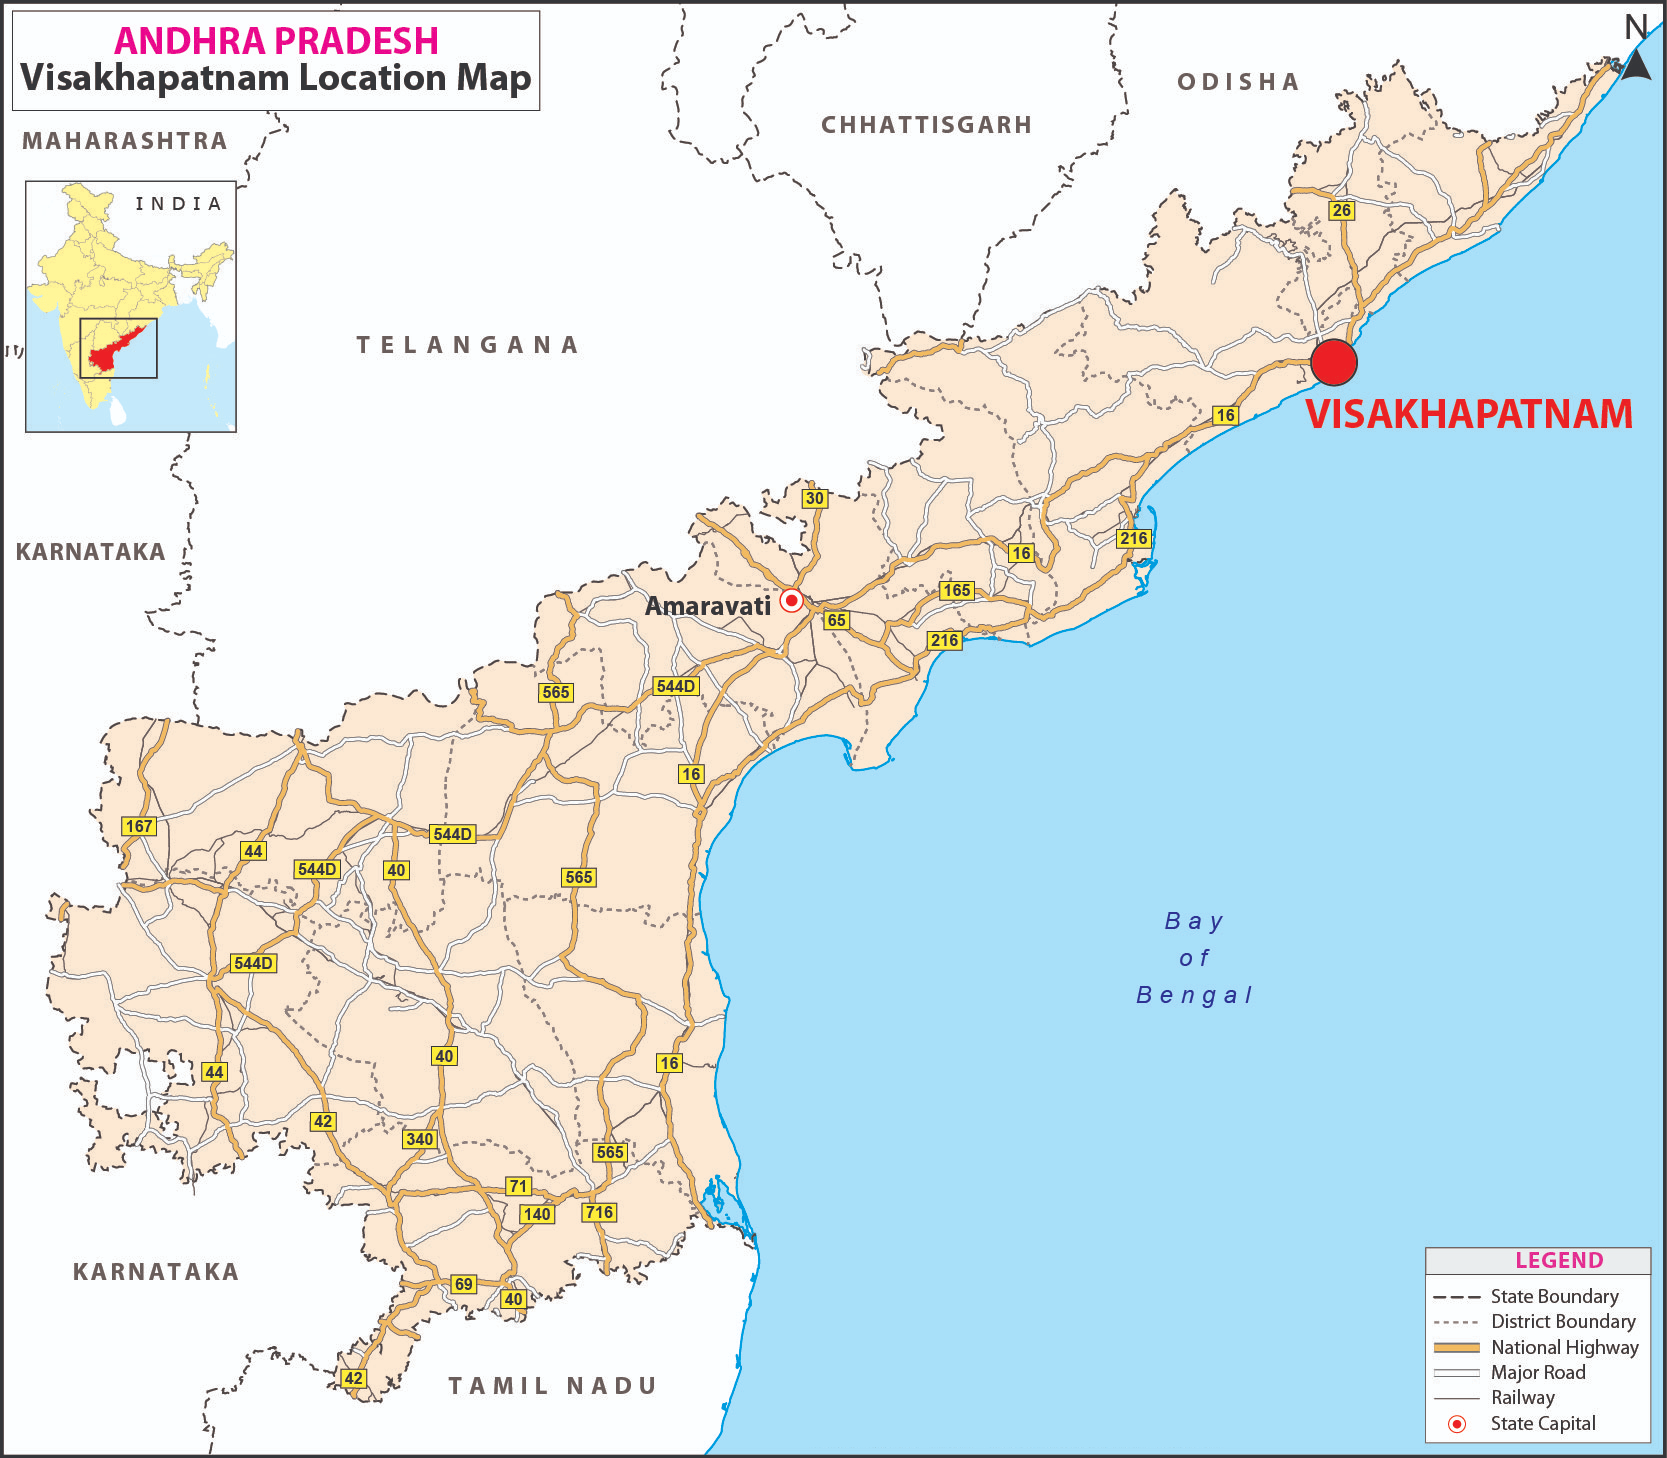 Andhra_Pradesh_Drishti_Ias_hindi